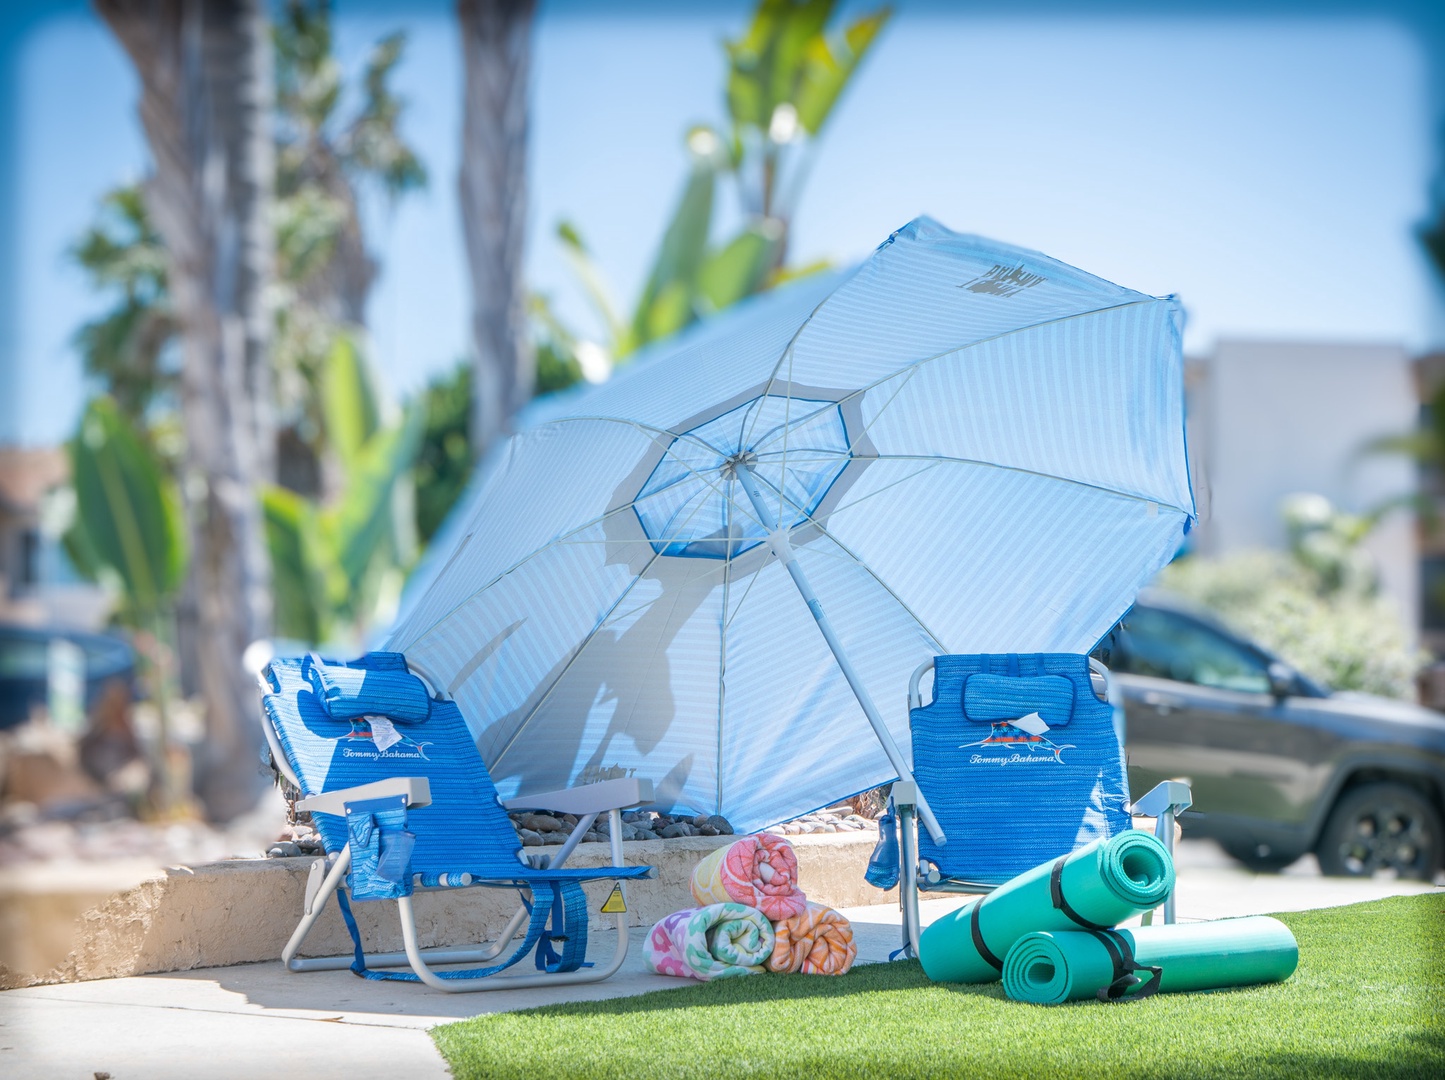 Beach gear: Beach chairs for adults and children, beach towels, yoga mats, umbrella, beach toys, and  beach wagon